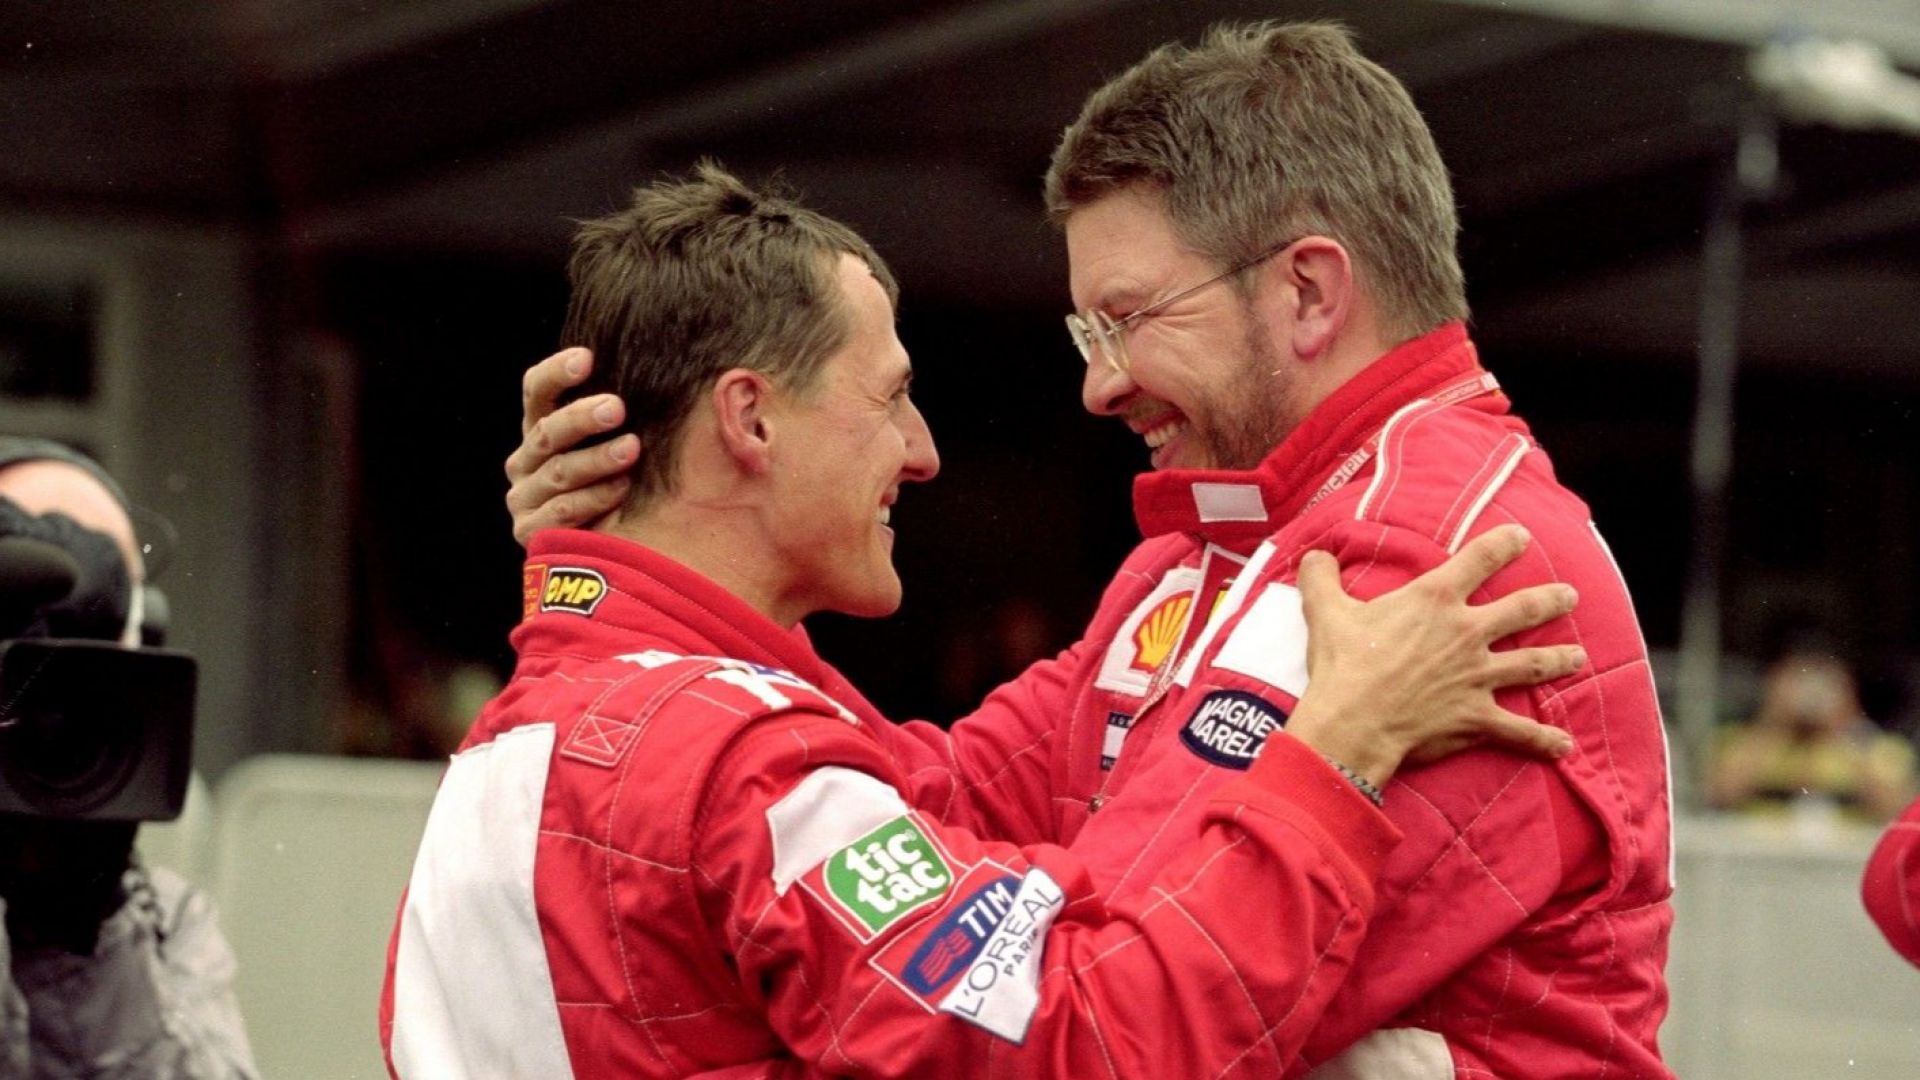 Шеф на Формула 1: Не знам до колко Шумахер е наясно с успехите на сина си